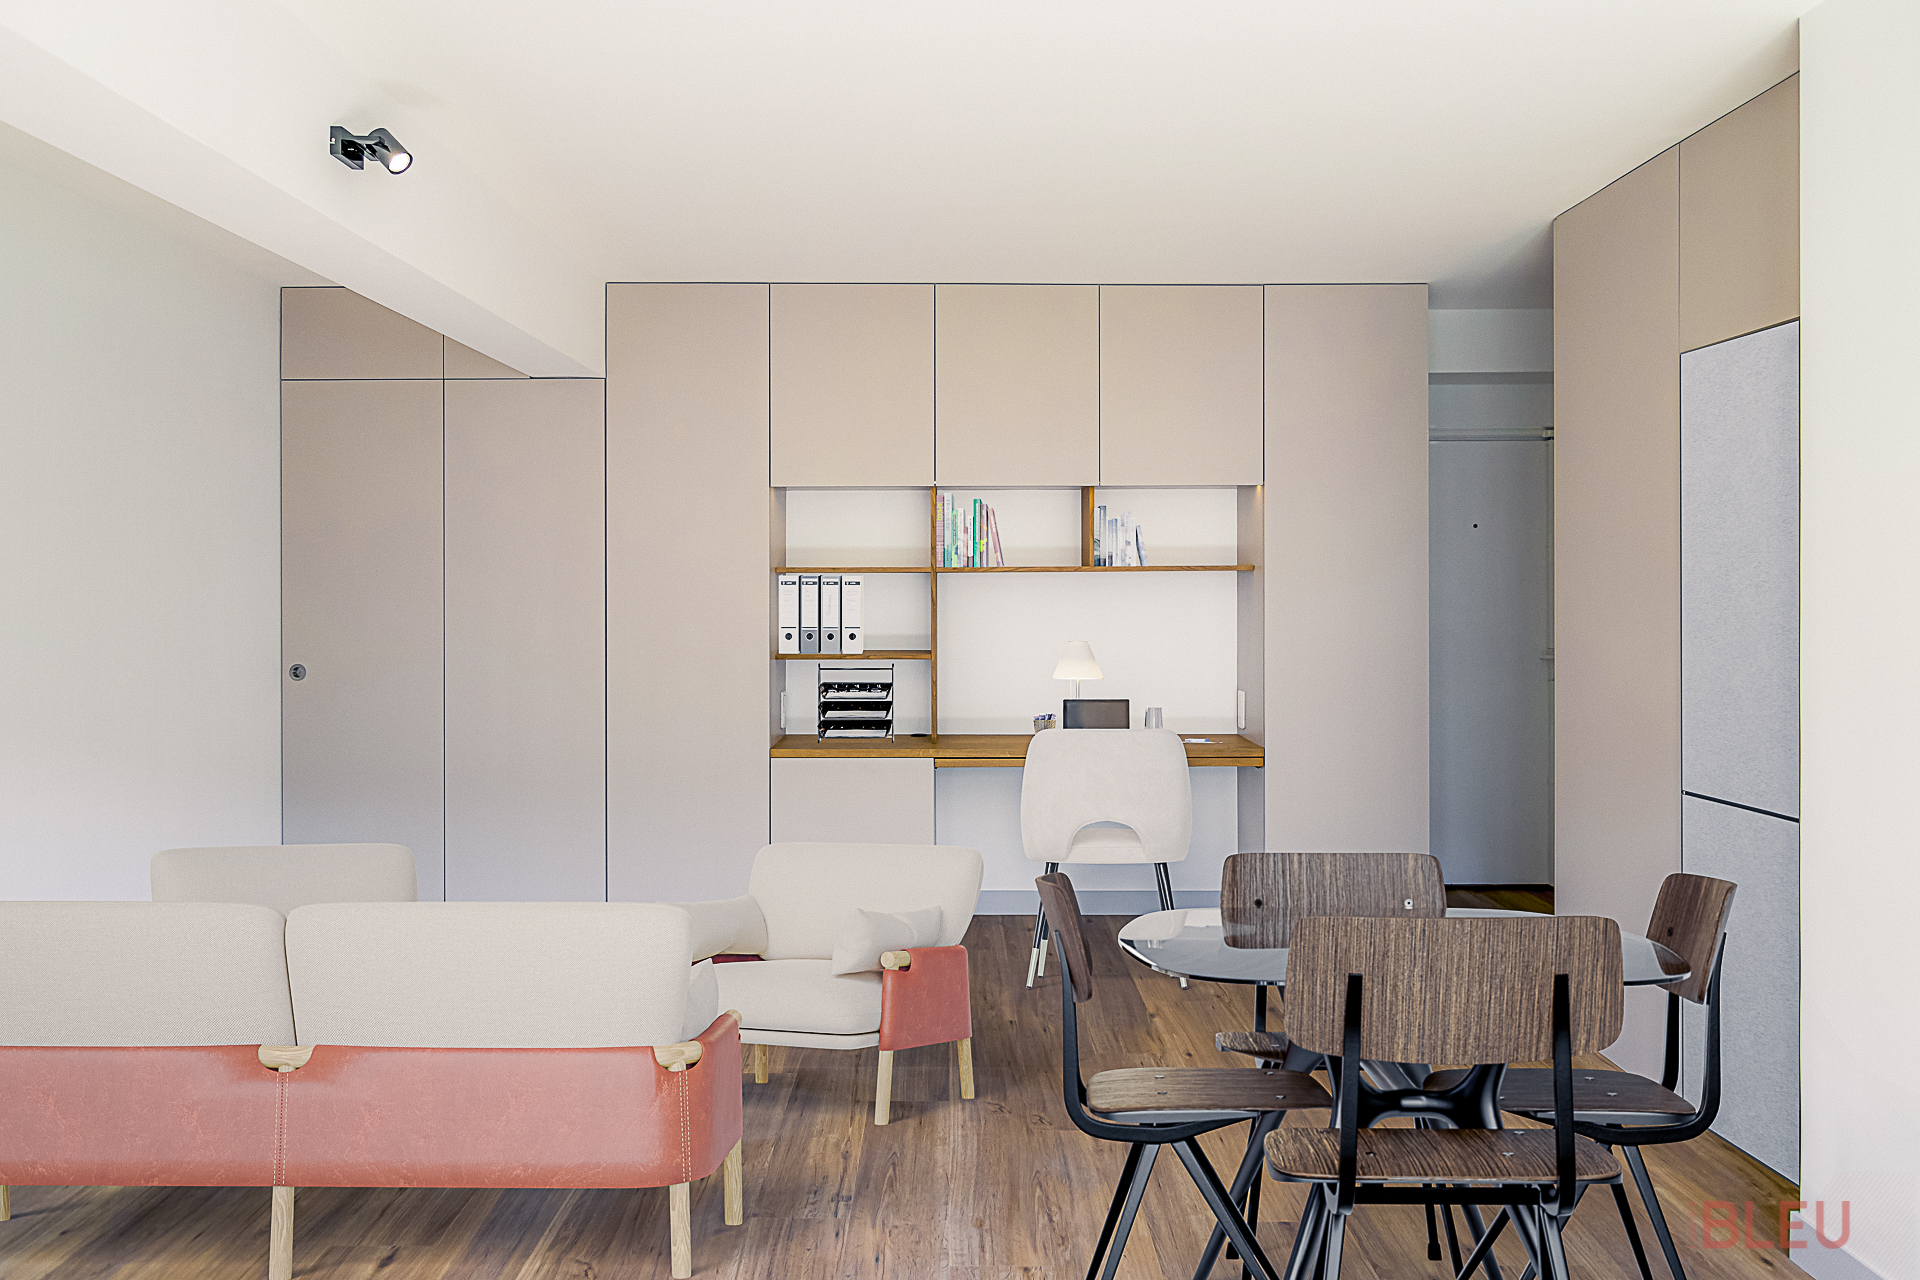 Espace de vie contemporain et multifonctionnel dans un appartement parisien, conçu par un architecte d'intérieur.